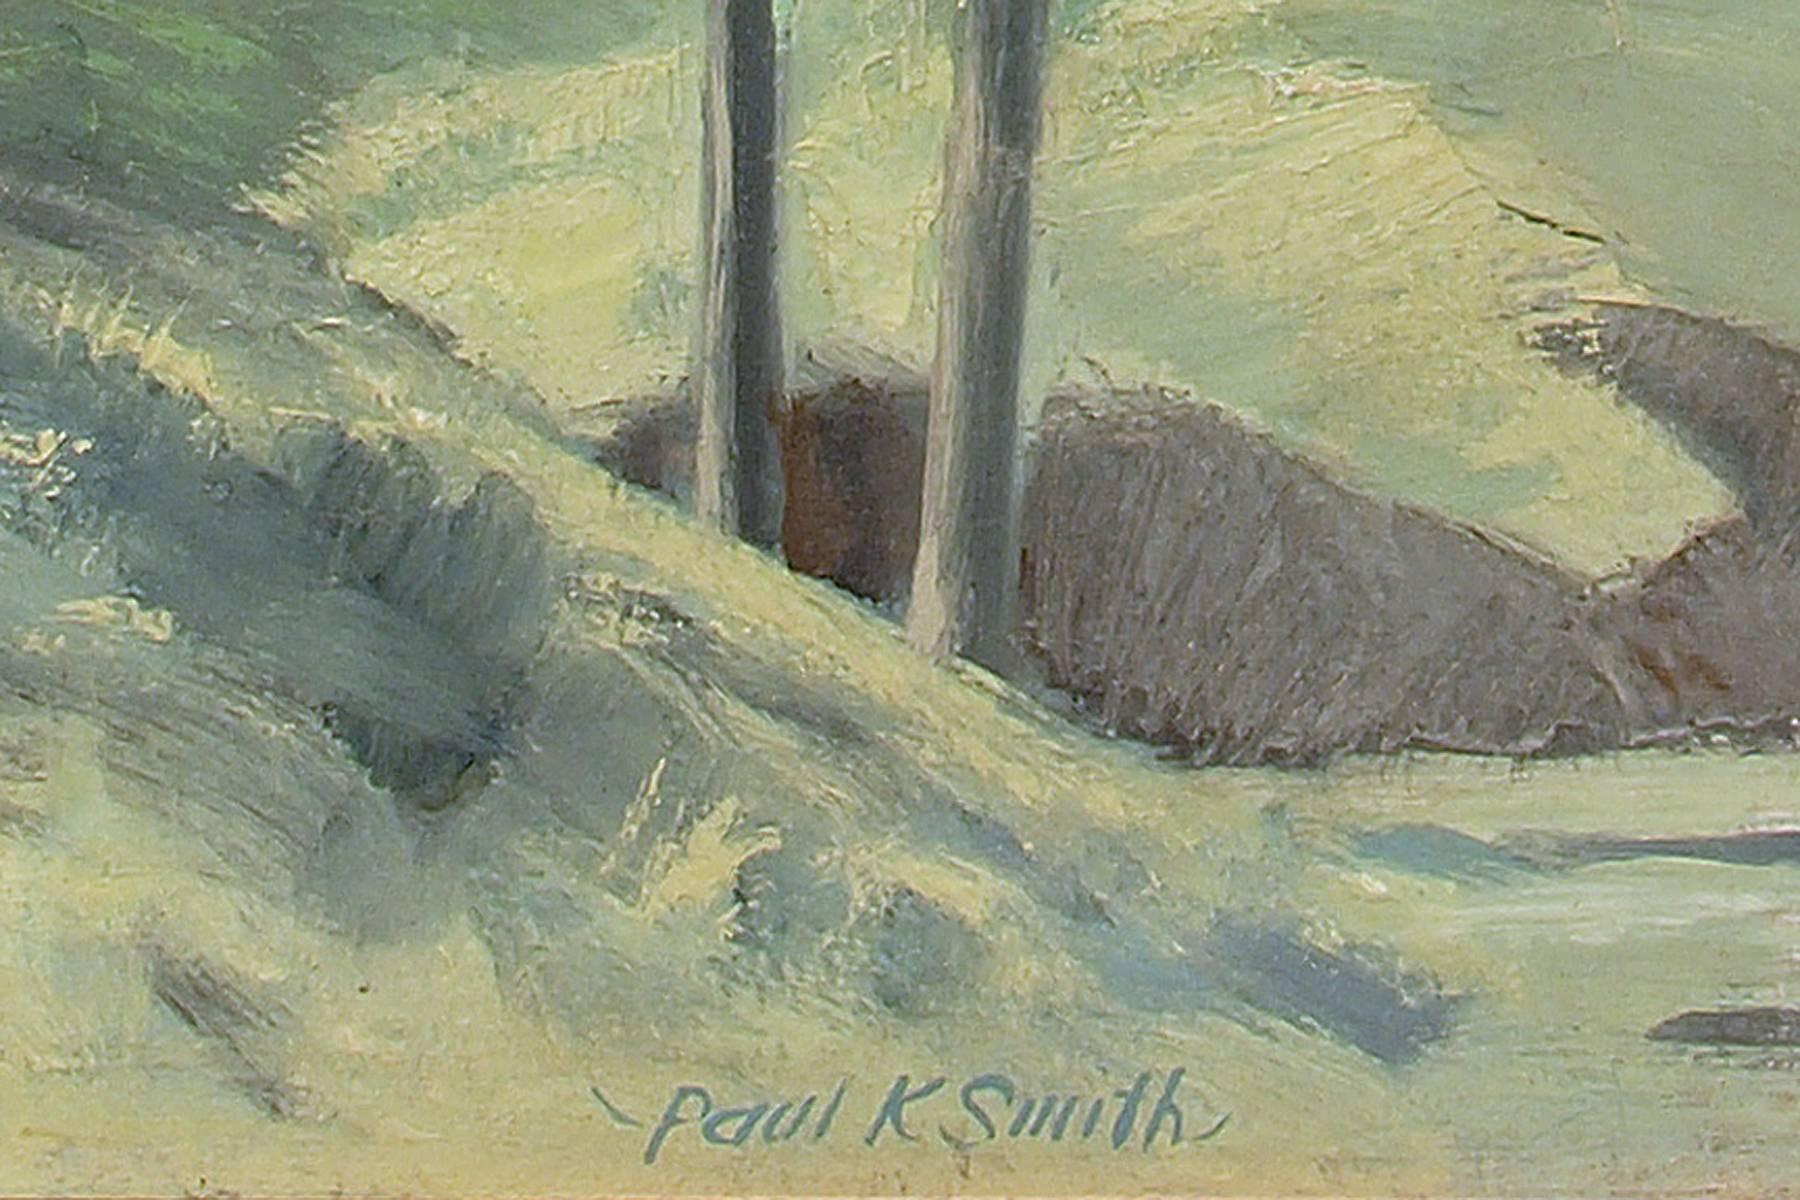 WPA-Ära signiert gerahmt modernistischen Ölgemälde von Häusern und Bäumen im Sommer mit einer stürmischen Wolke in Colorado von Paul K. Smith in Schattierungen von grün, gelb, grau, blau und braun.  Die Außenmaße betragen 29 x 33 x 1 ¼ Zoll und